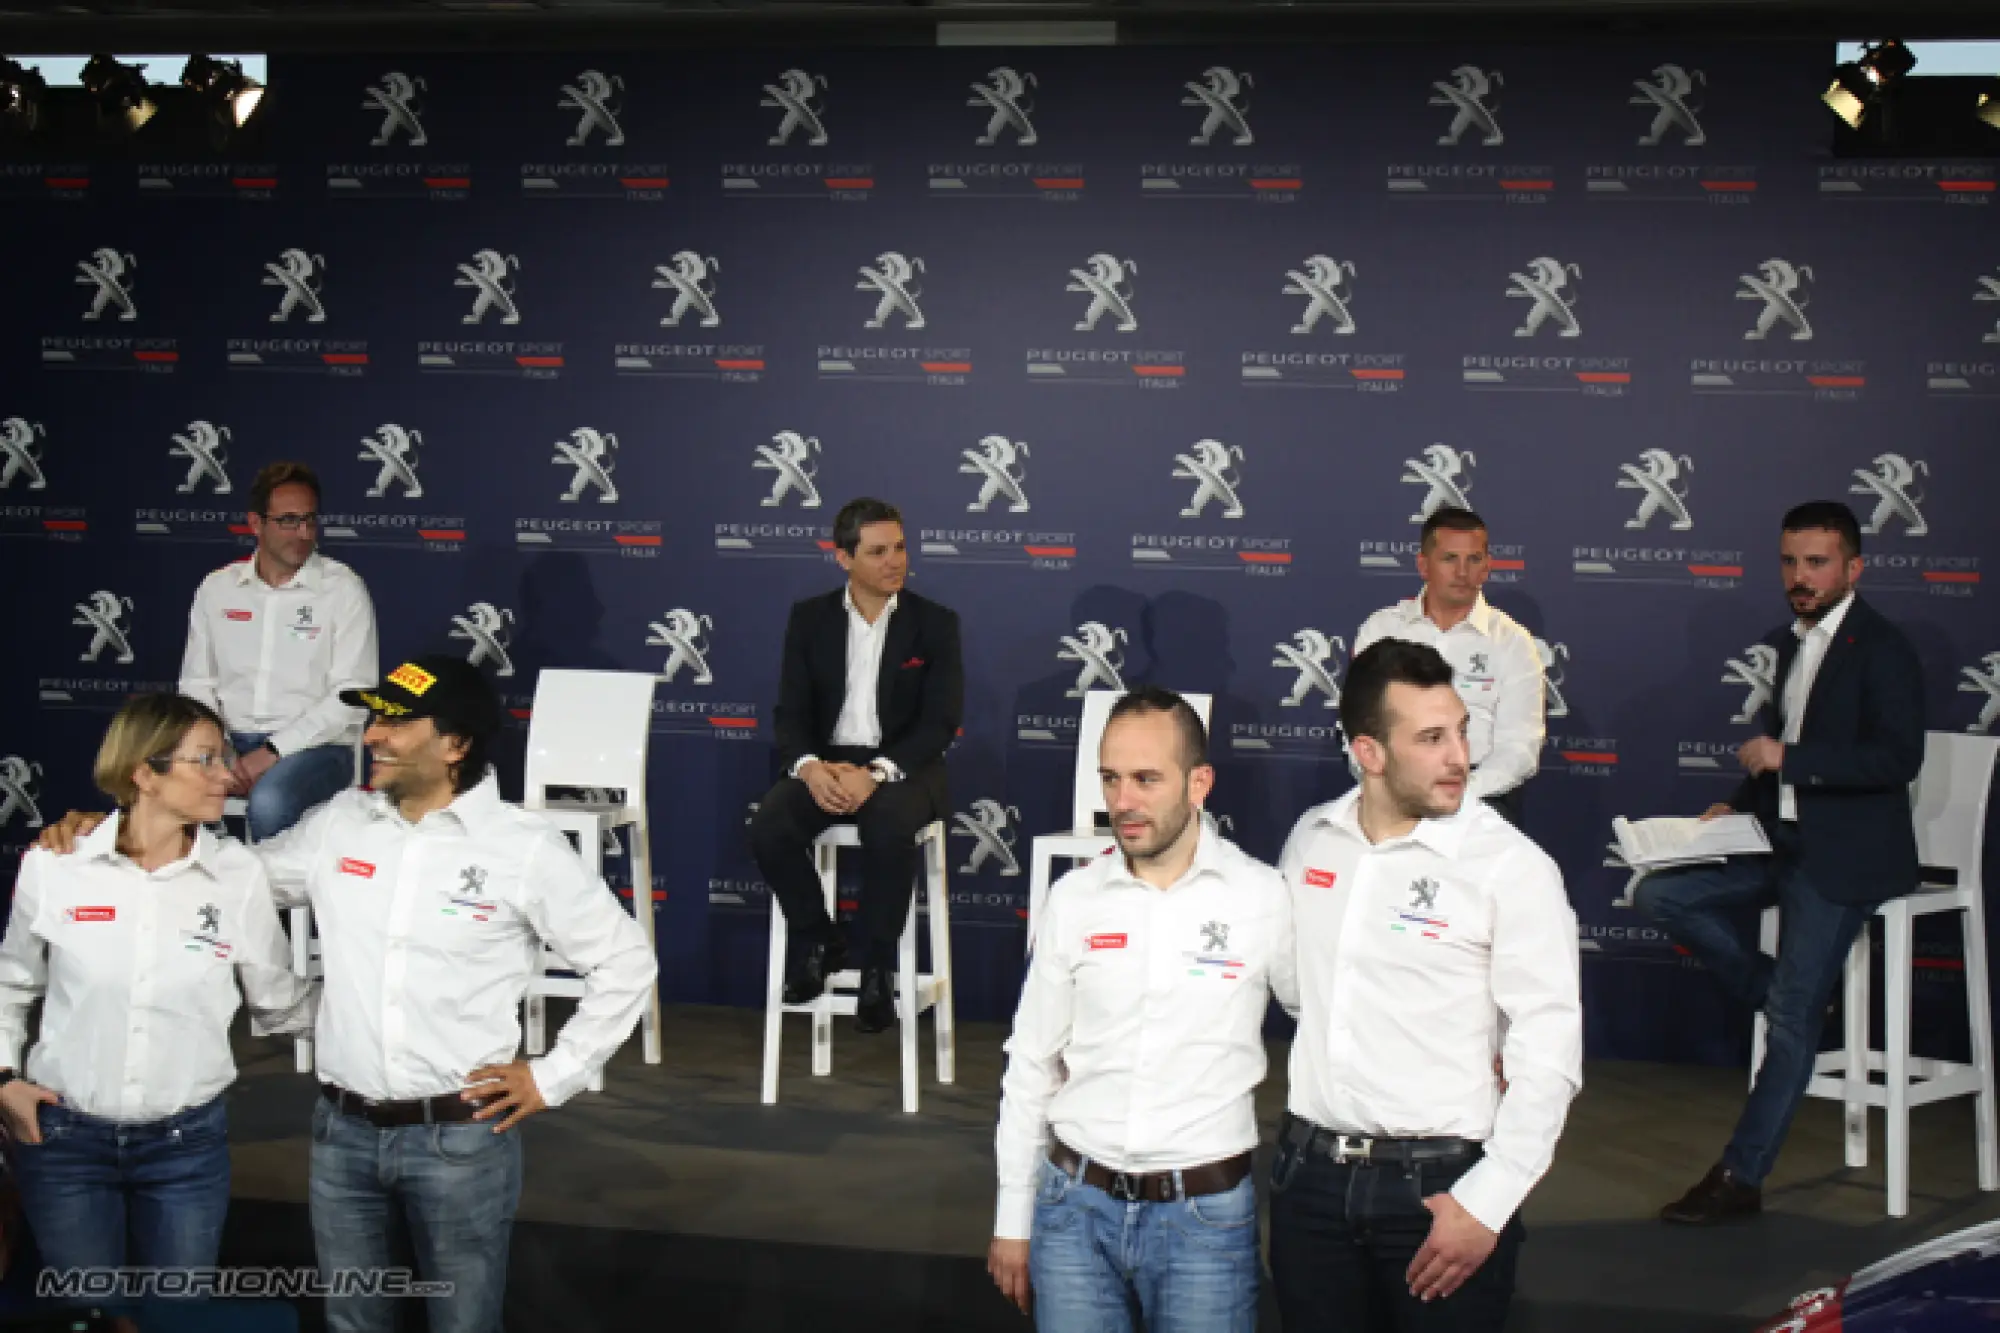 Peugeot Presentazione Campionato Italiano Rally 2017 - 14